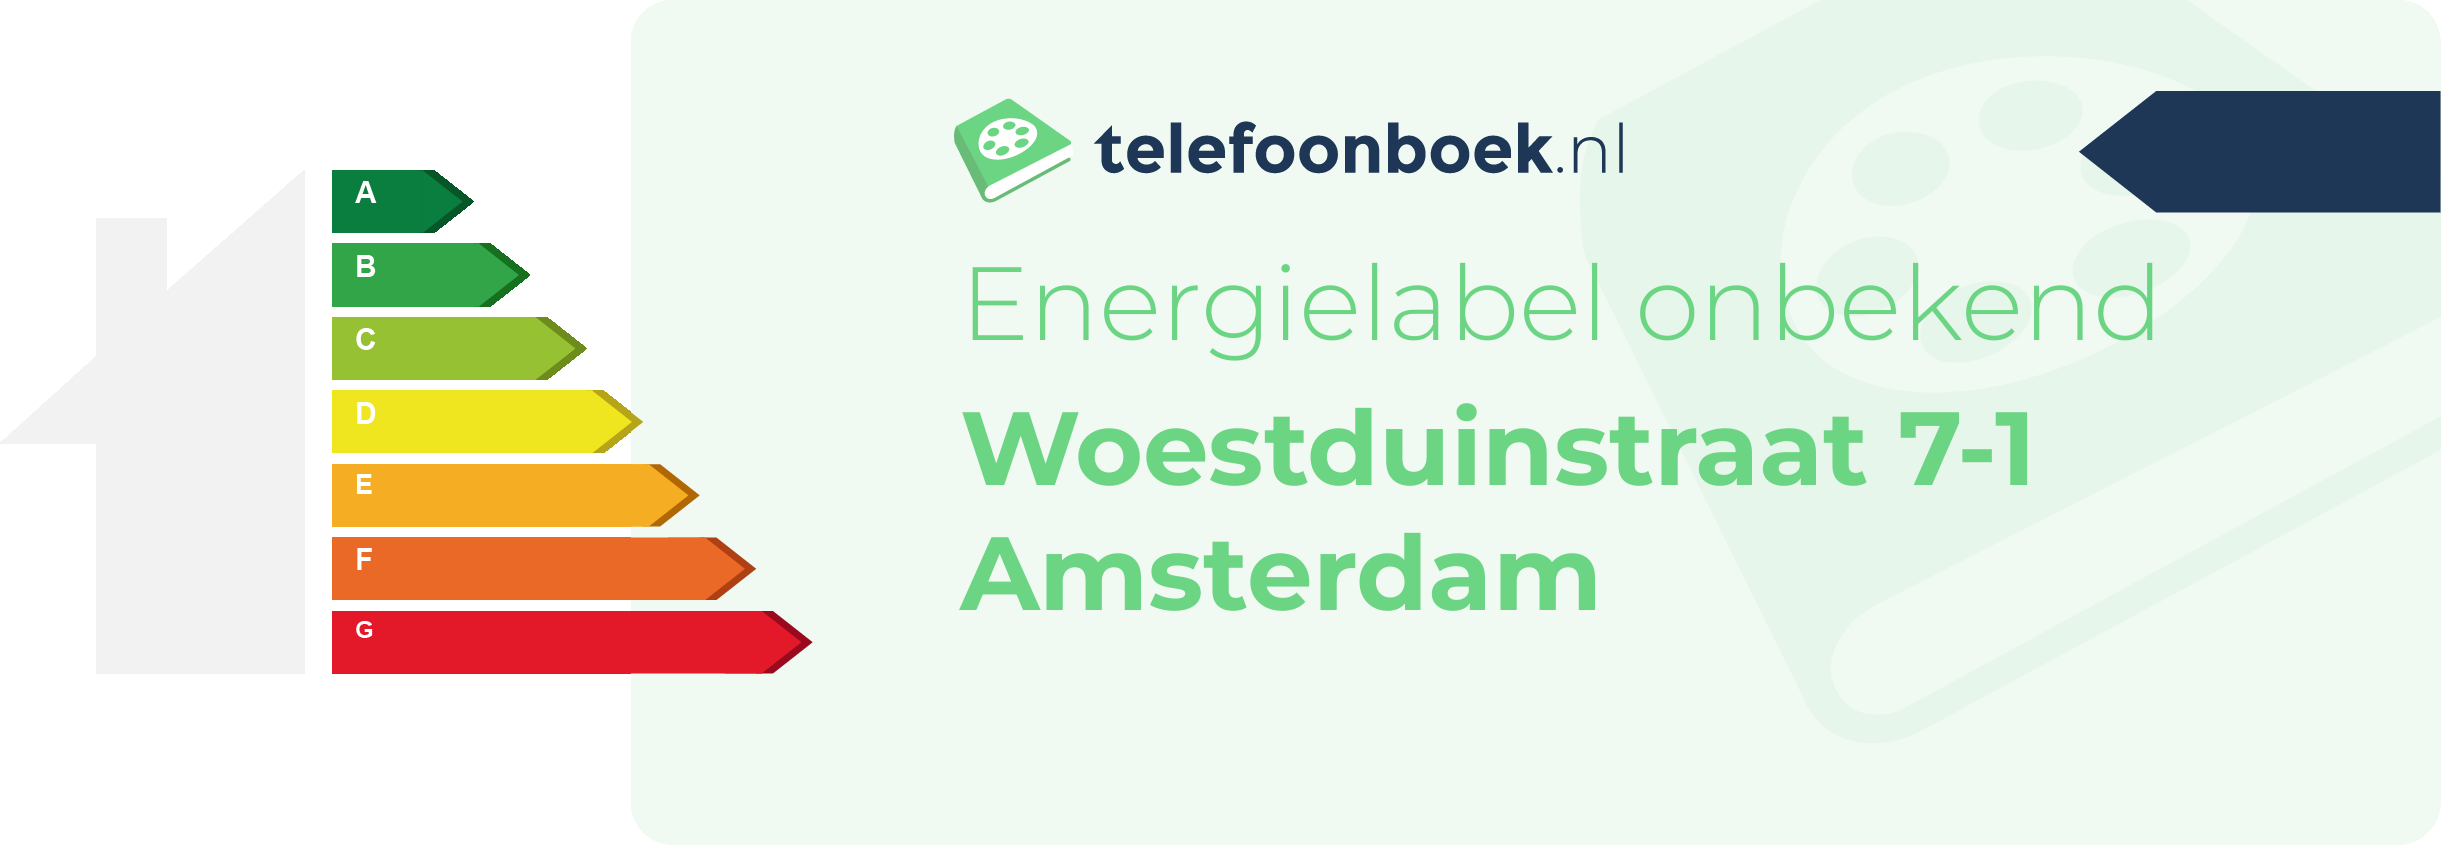 Energielabel Woestduinstraat 7-1 Amsterdam